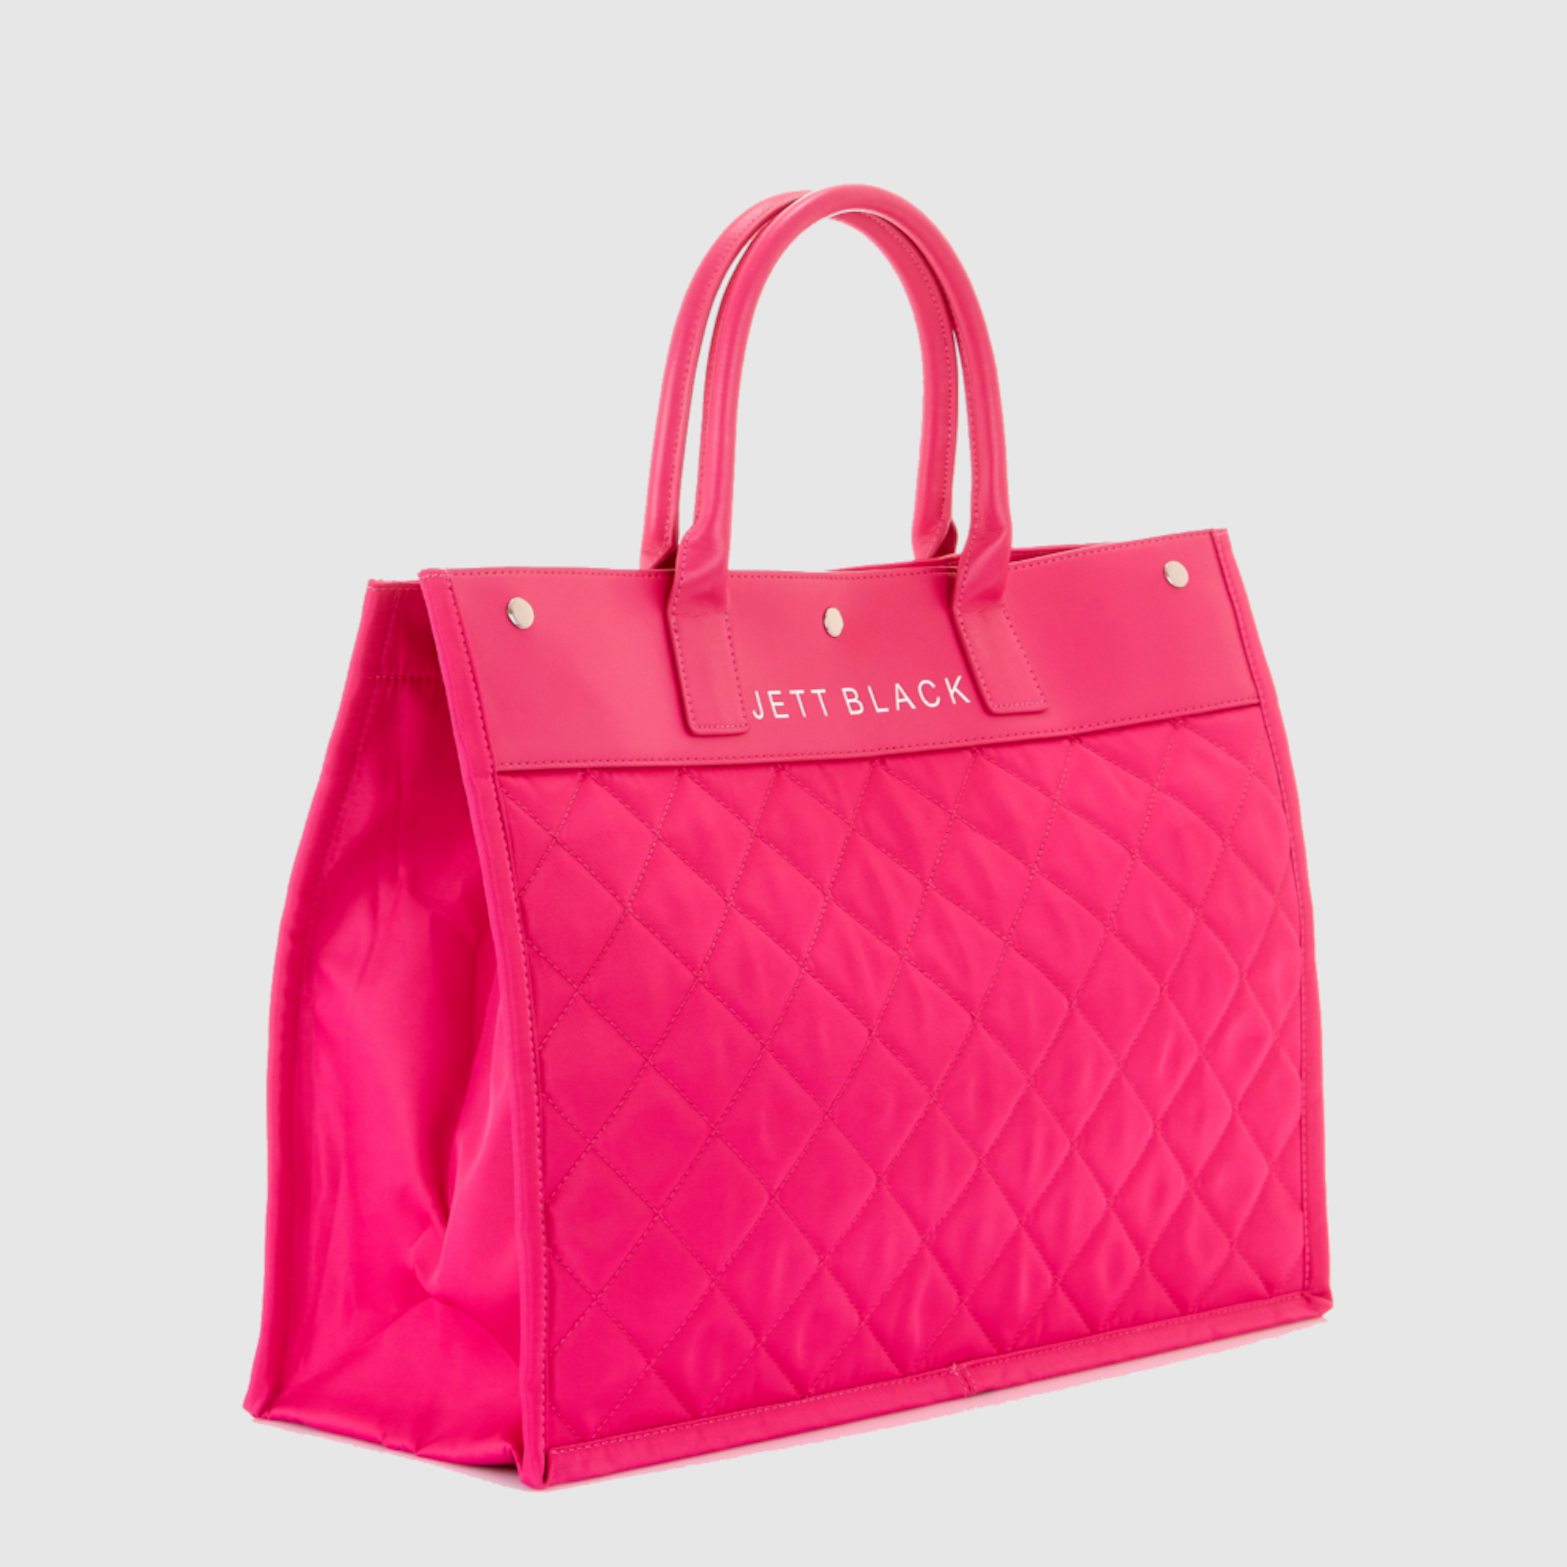 The Brooklyn Pink Large Tote Bag – J E T T B L A C K